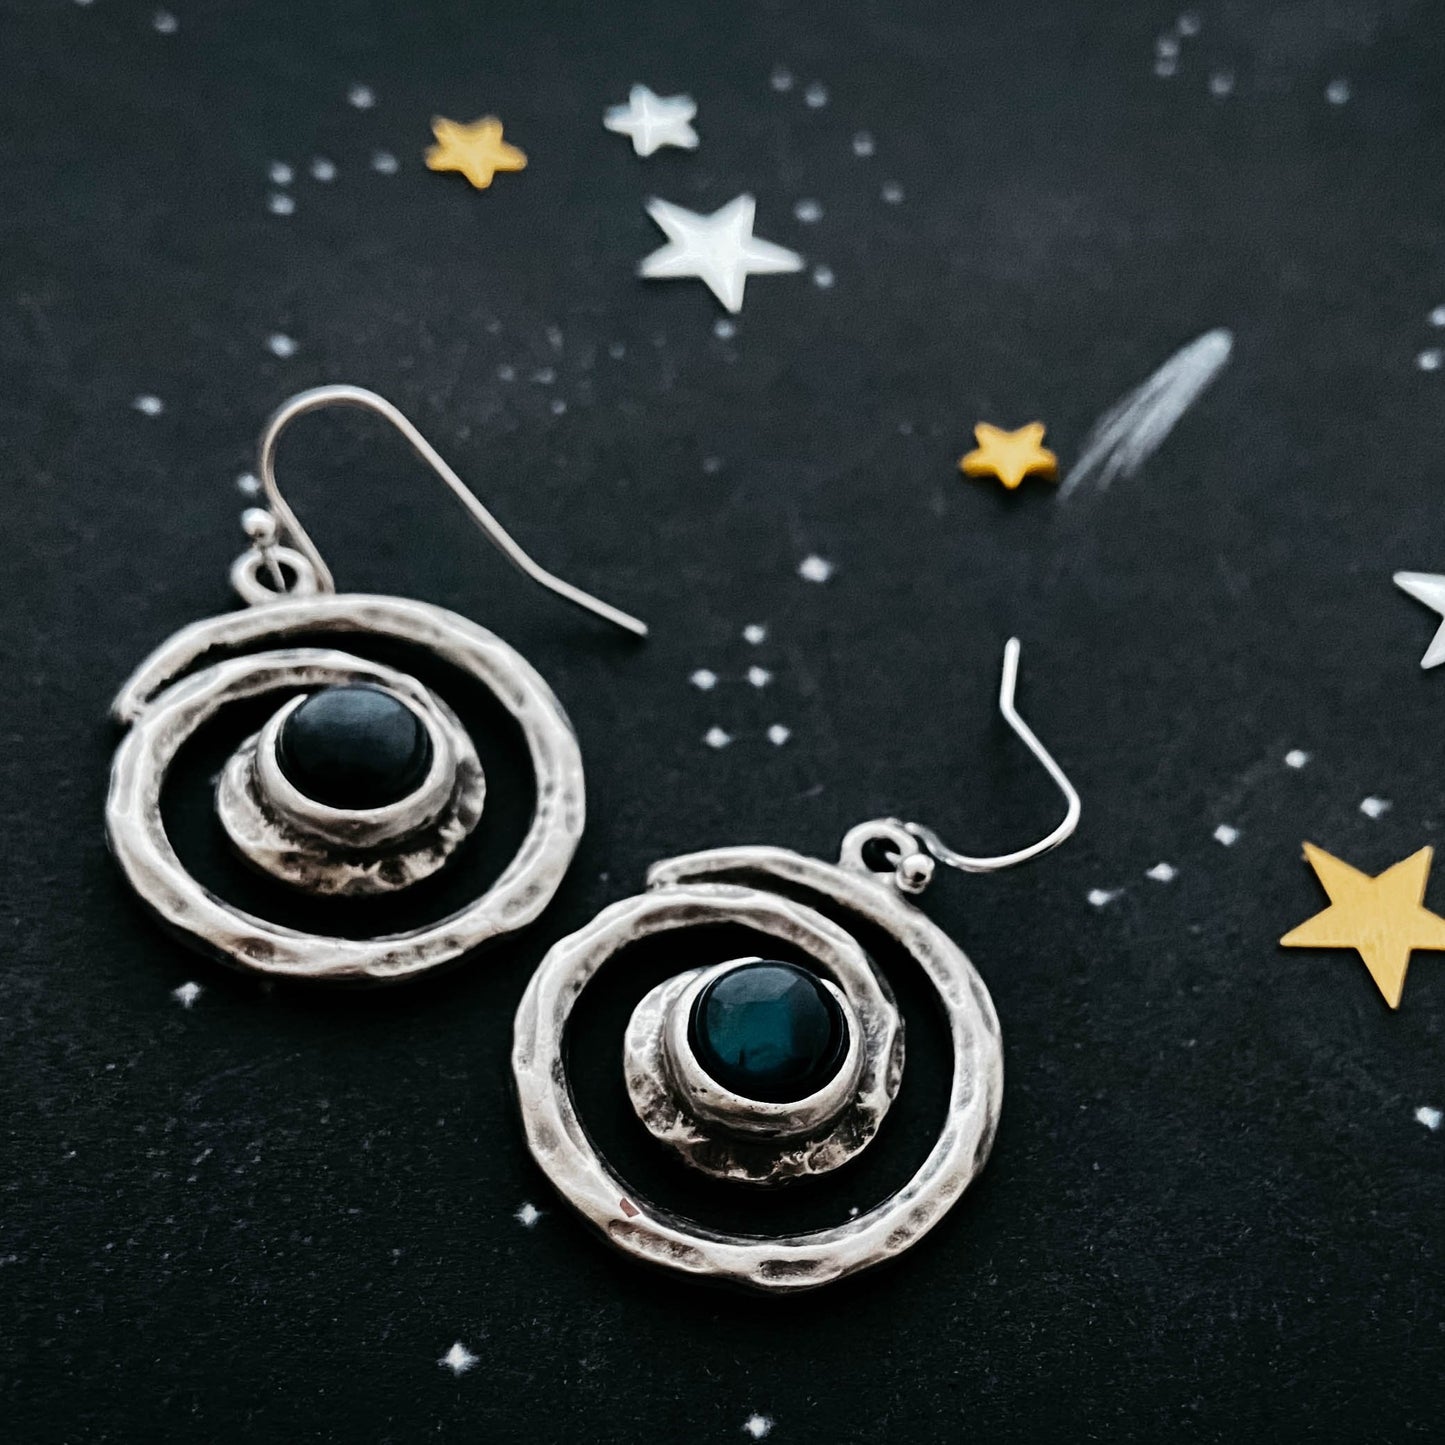 Milky Way Earrings - Spiral Silver Dangle Earrings with Labradorite Earrings Yugen Handmade   